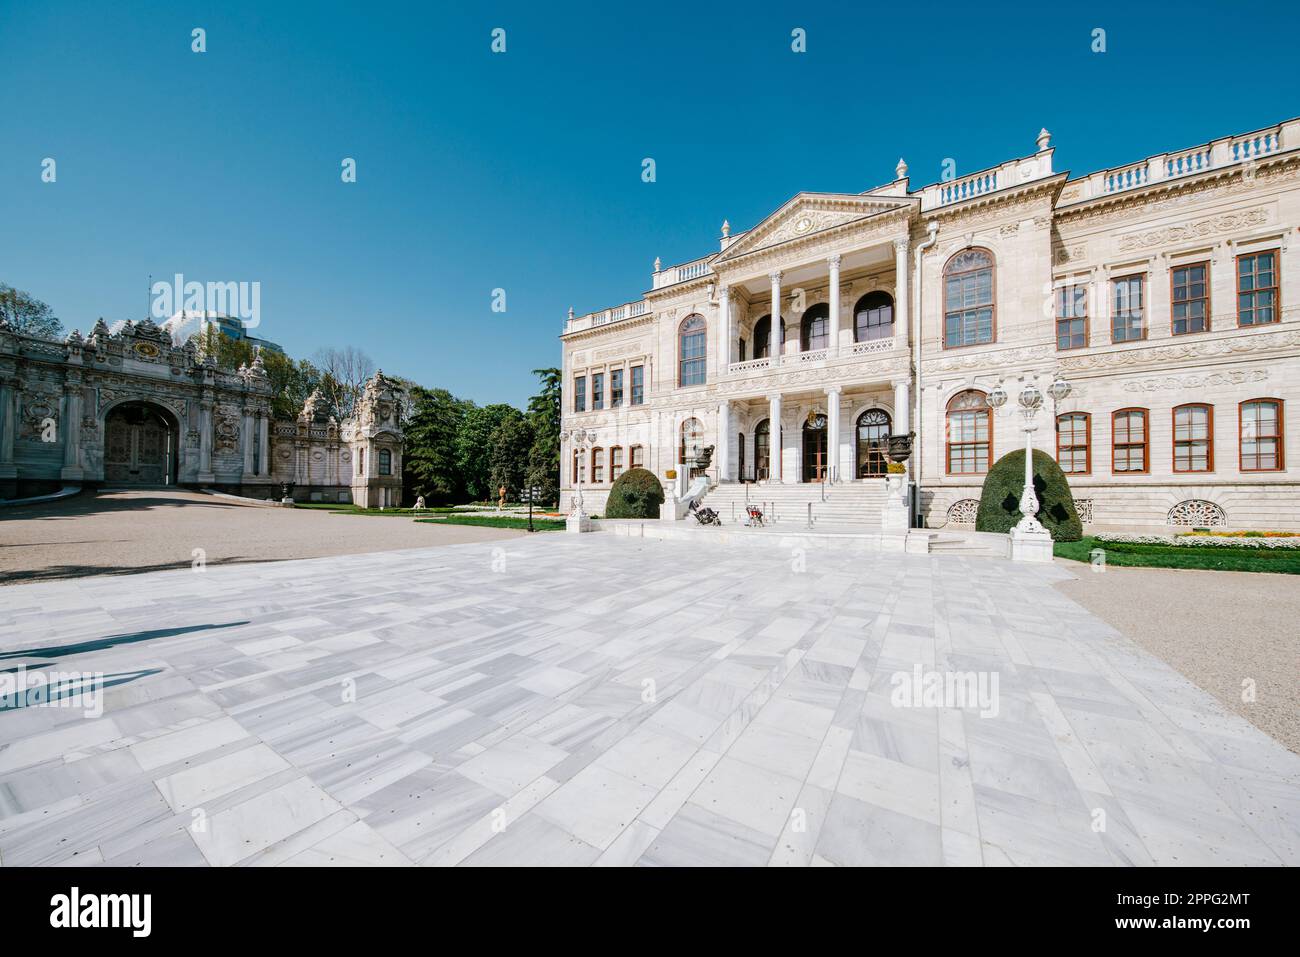 Vista del palazzo reale di Dolme Bahce a Istanbul, Turchia Foto Stock